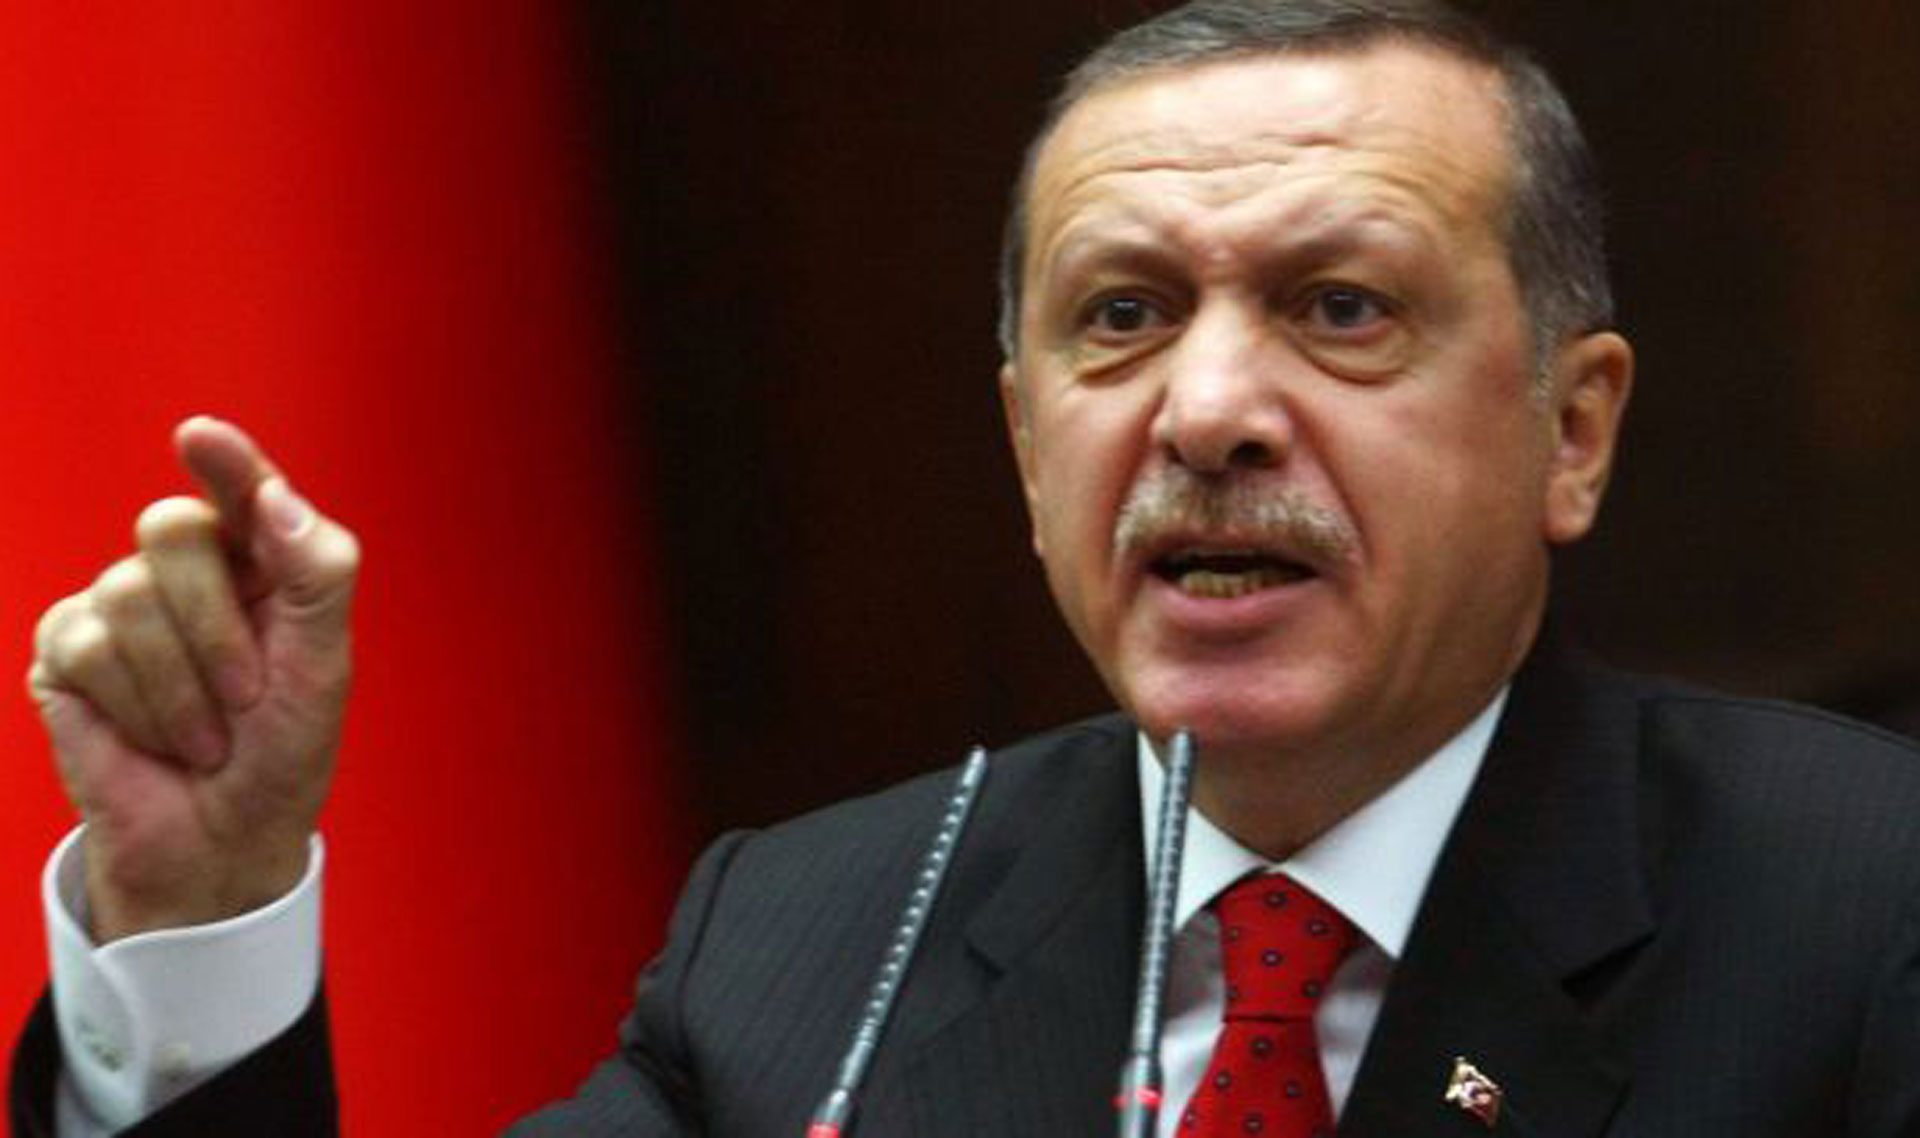 Писатель, поймавший Эрдогана на фальшивке, найден мертвым